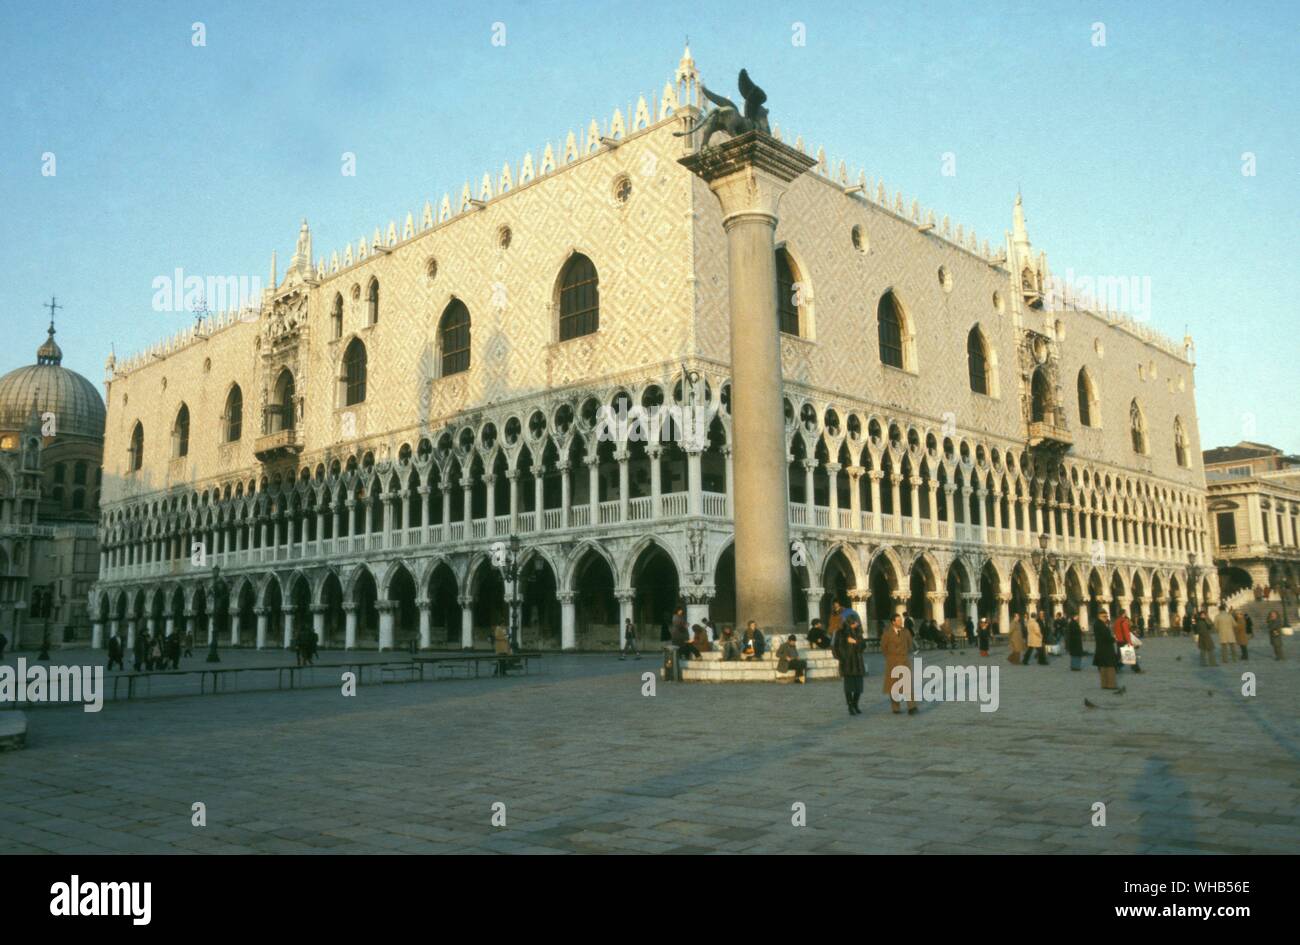 Le Palais des Doges - Venise - Palais des Doges est un palais gothique à Venise. En Italien il est appelé le palais des Doges de Venise. Le palais était la résidence du Doge de Venise.. Banque D'Images